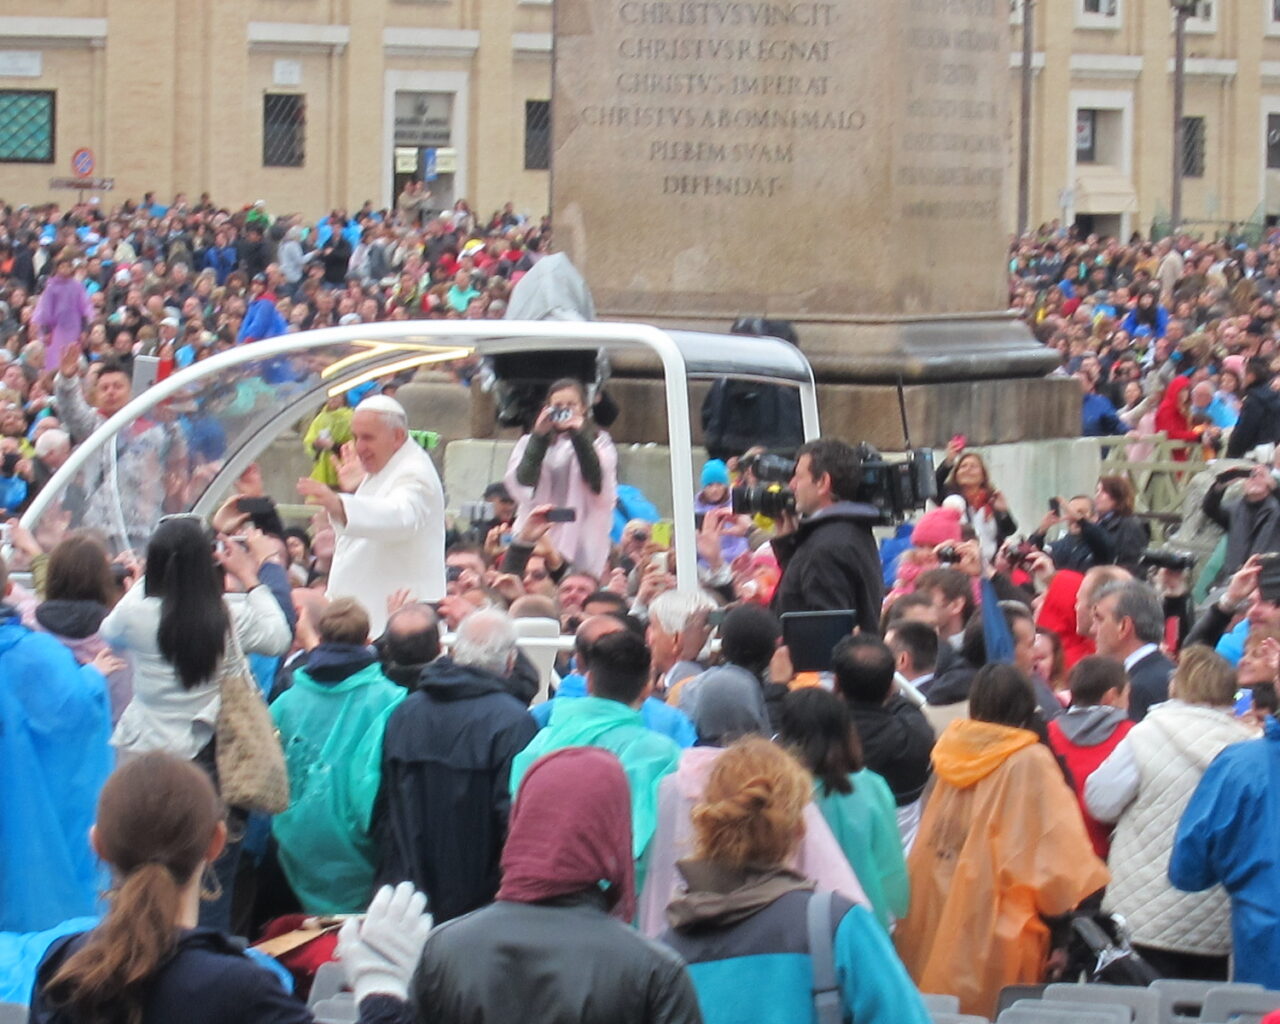 11 Le Pape François salue la foule depuis sa papamobile